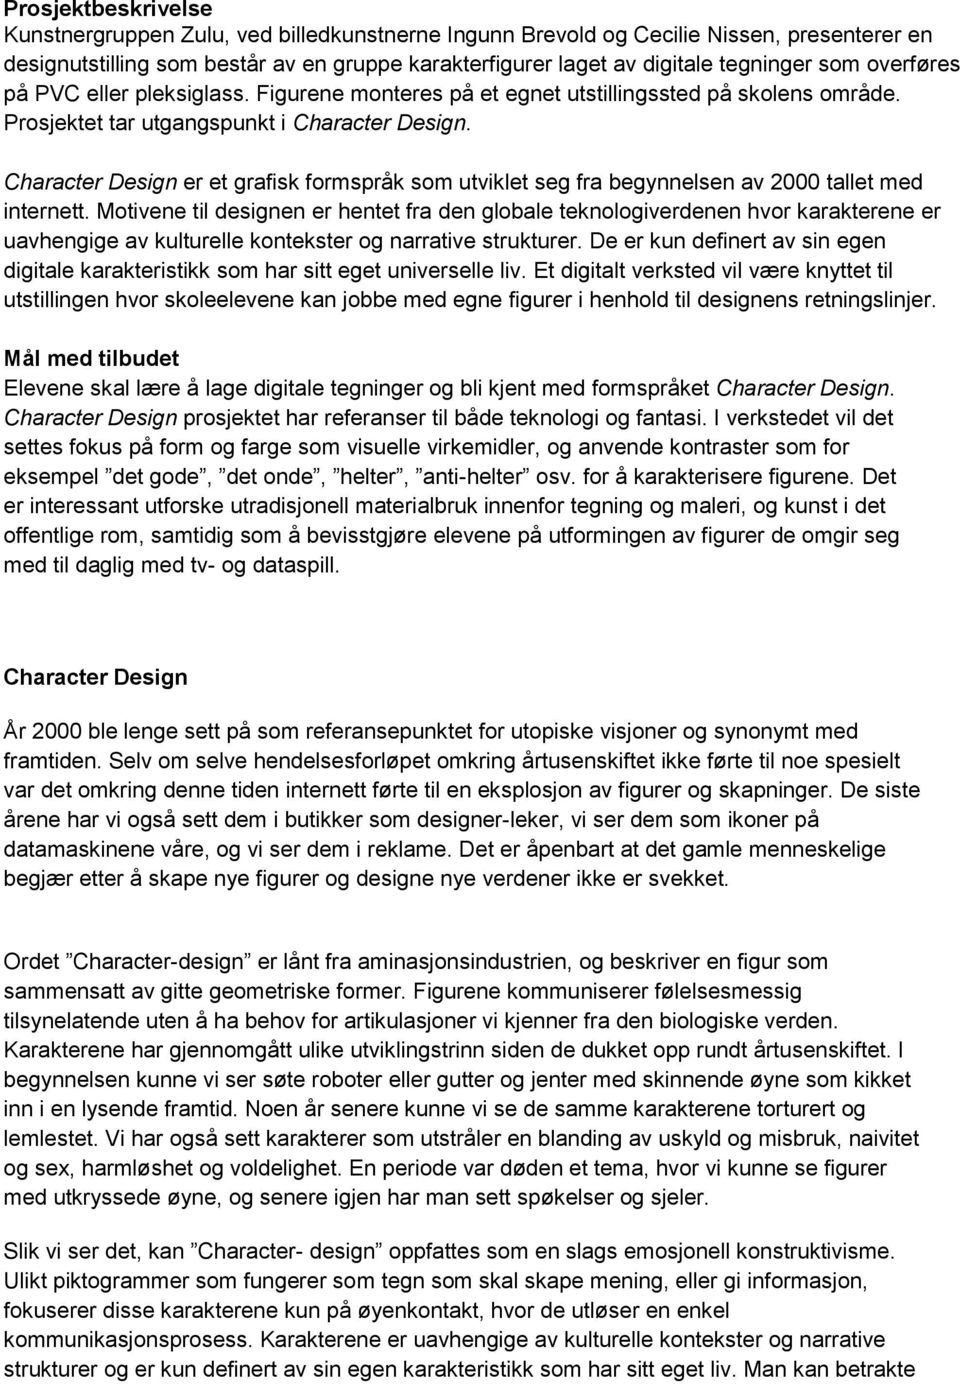 Character Design er et grafisk formspråk som utviklet seg fra begynnelsen av 2000 tallet med internett.